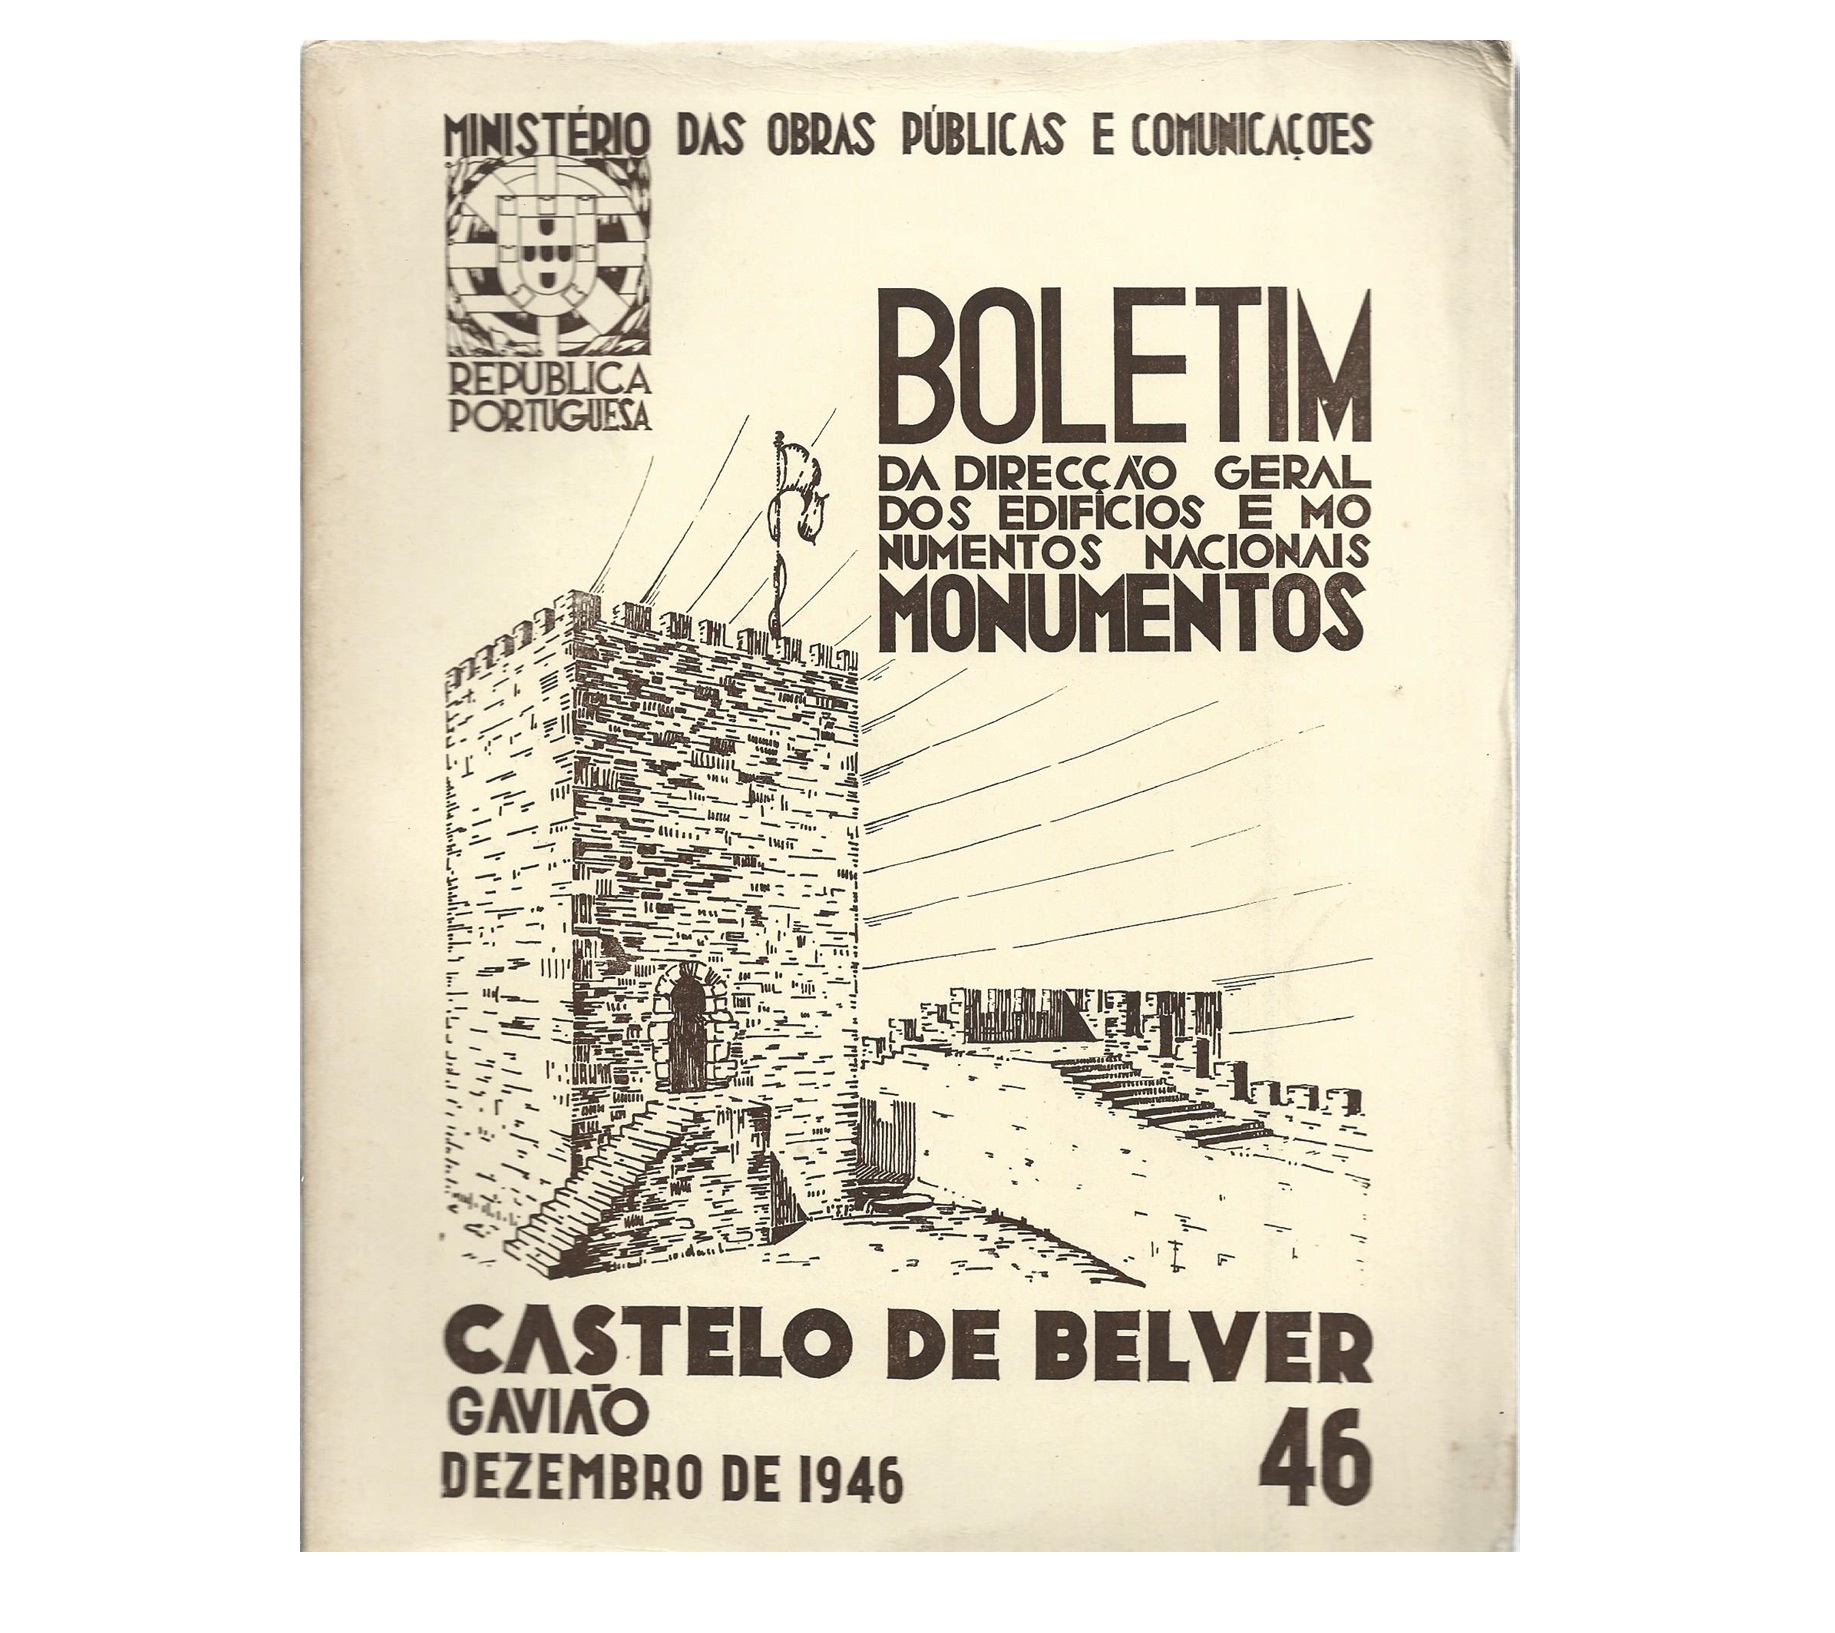 CASTELO DE BELVER: GAVIÃO